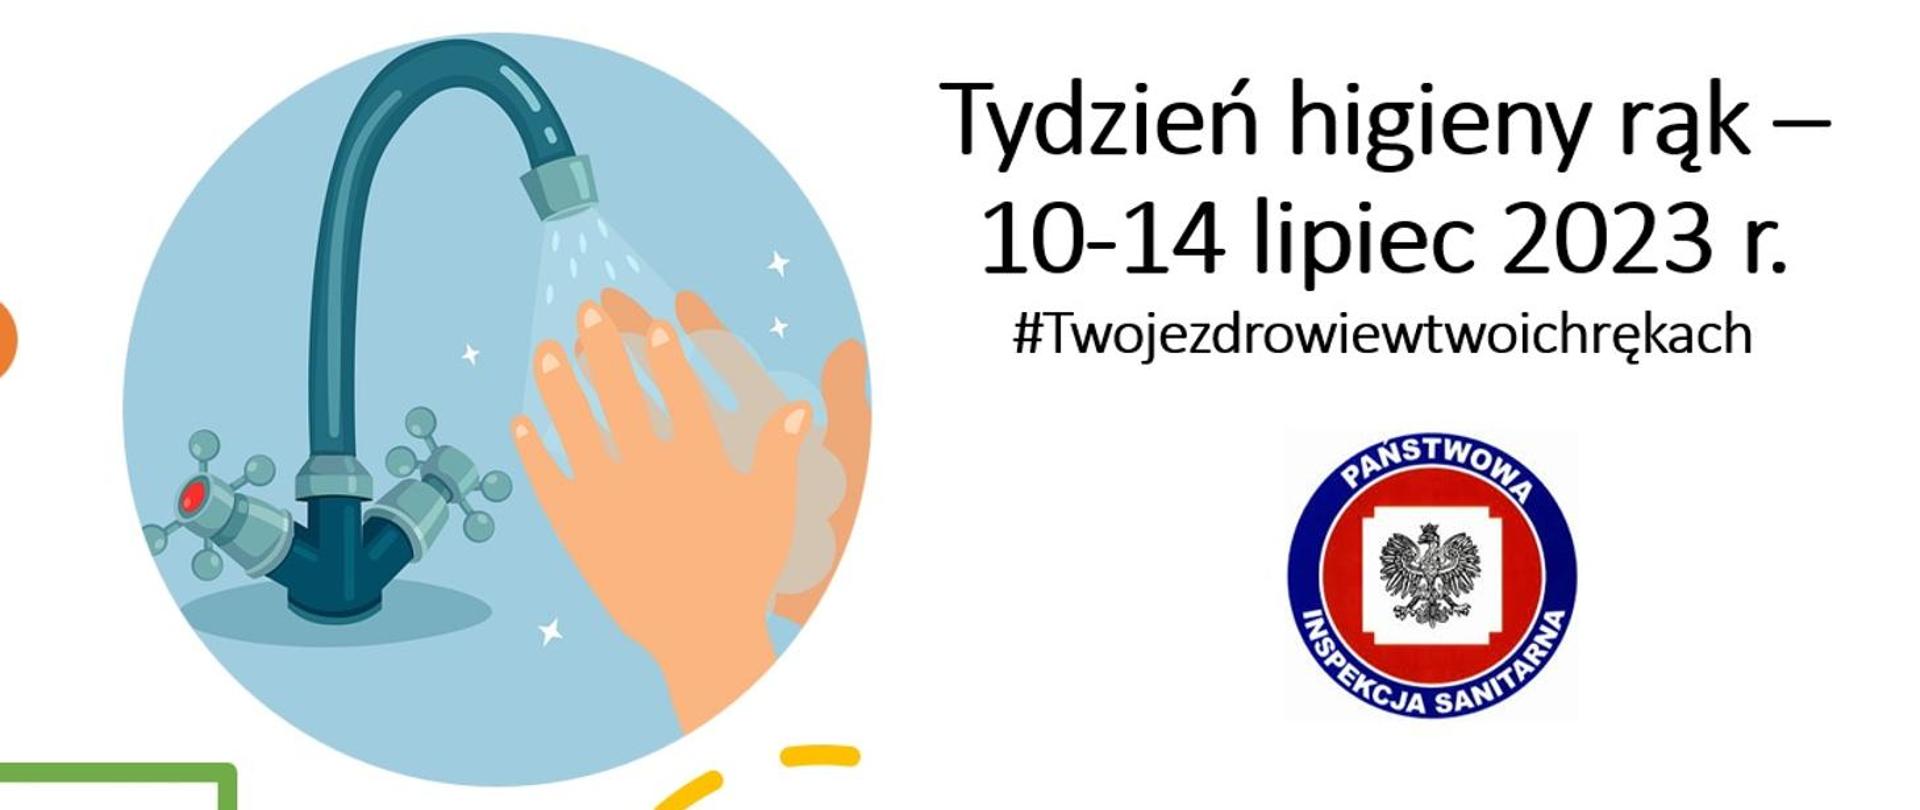 Tydzień higieny rąk 10-14 lipiec 2023